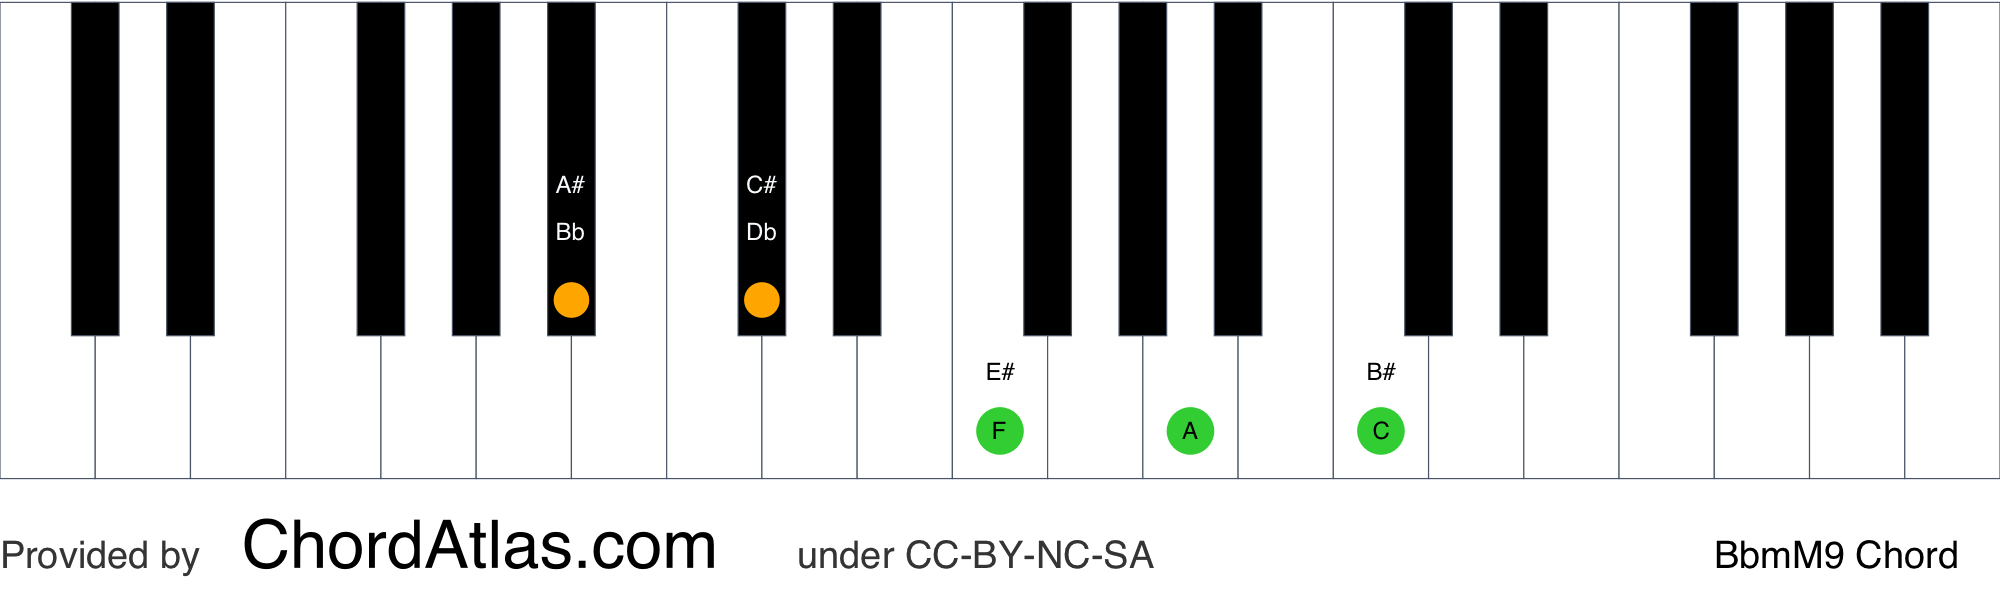 b flat minor chord progression